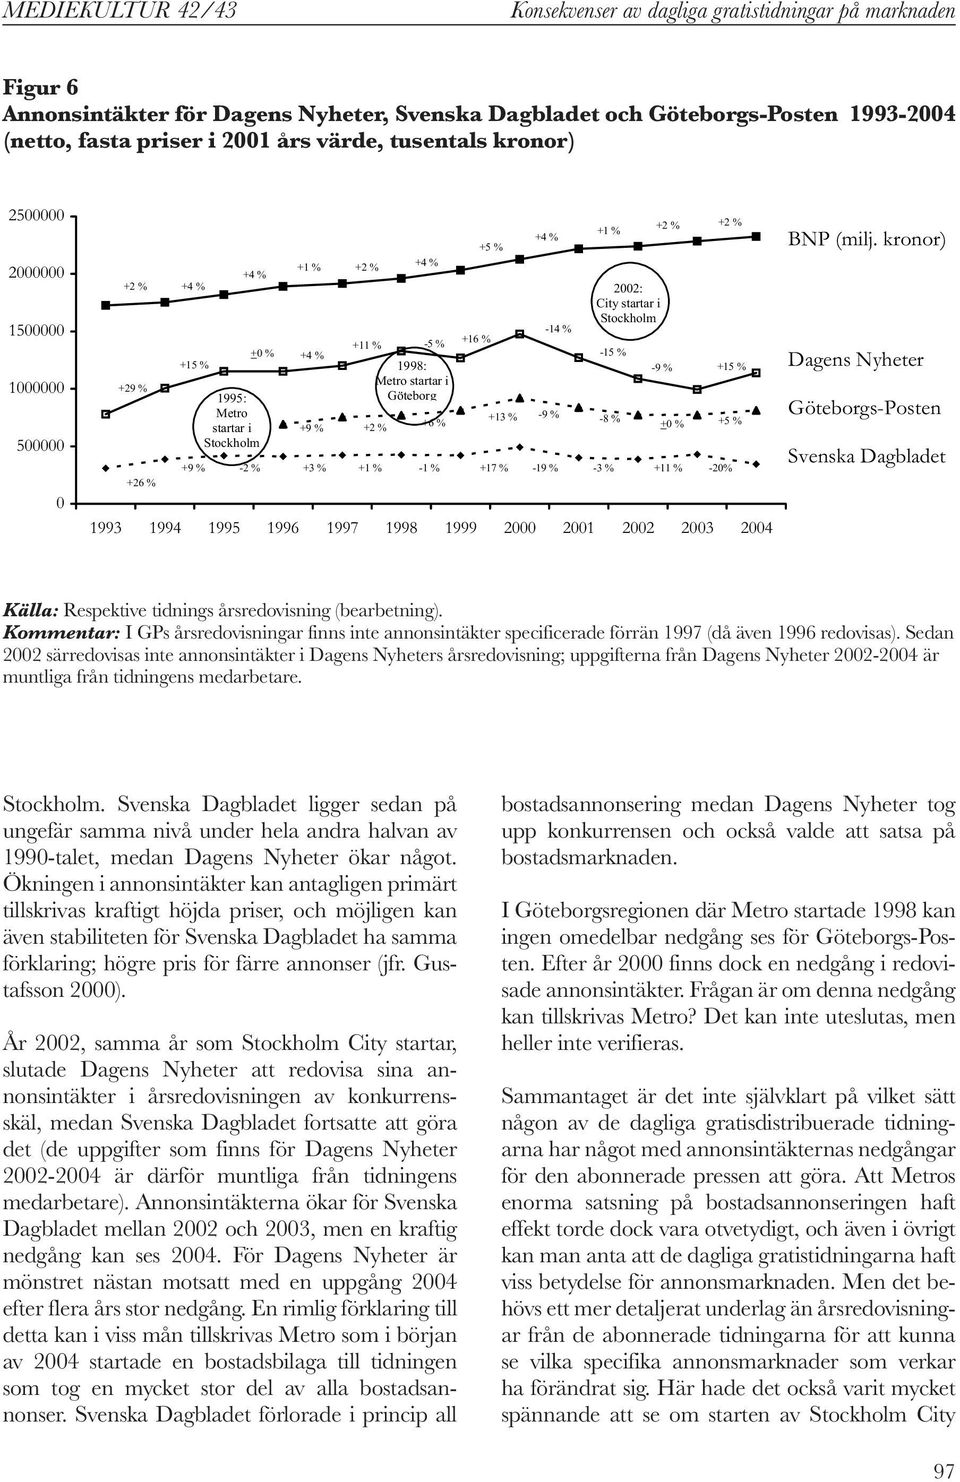 1997 1998 1999 2 21 22 23 24 +16 % +5 % +4 % +1 % 22: City startar i Stockholm +9 % -2 % +3 % +1 % -1 % +17 % -19 % -3 % +11 % -2% -14 % -15 % +13 % -9 % -8 % +2 % -9 % + % +2 % +15 % +5 % BNP (milj.